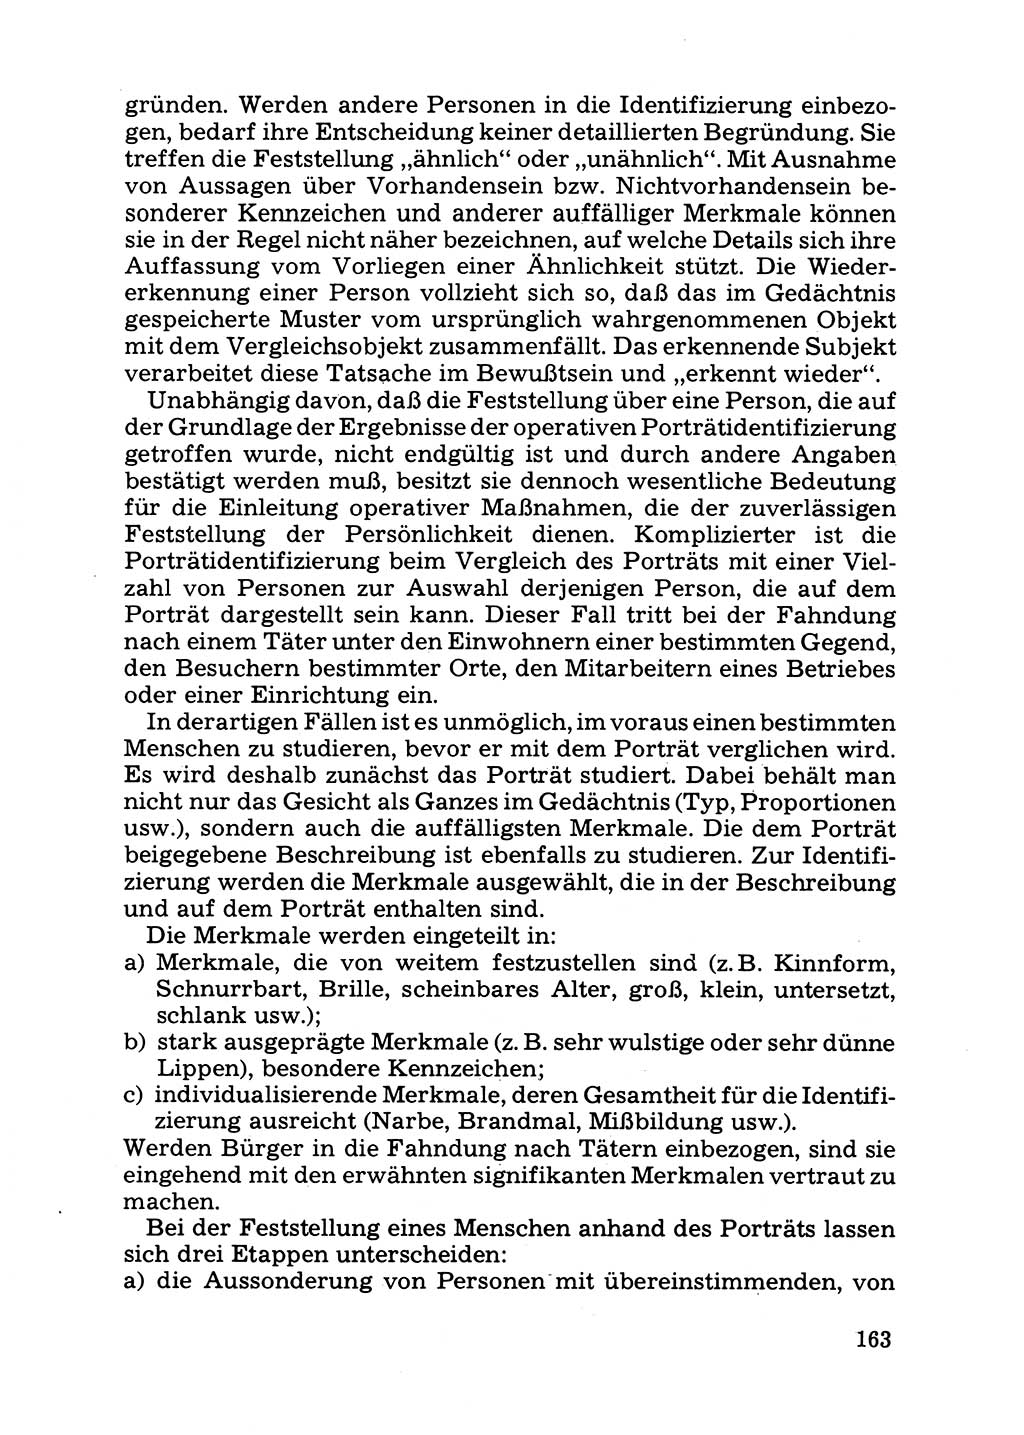 Das subjektive Porträt [Deutsche Demokratische Republik (DDR)] 1981, Seite 163 (Subj. Port. DDR 1981, S. 163)